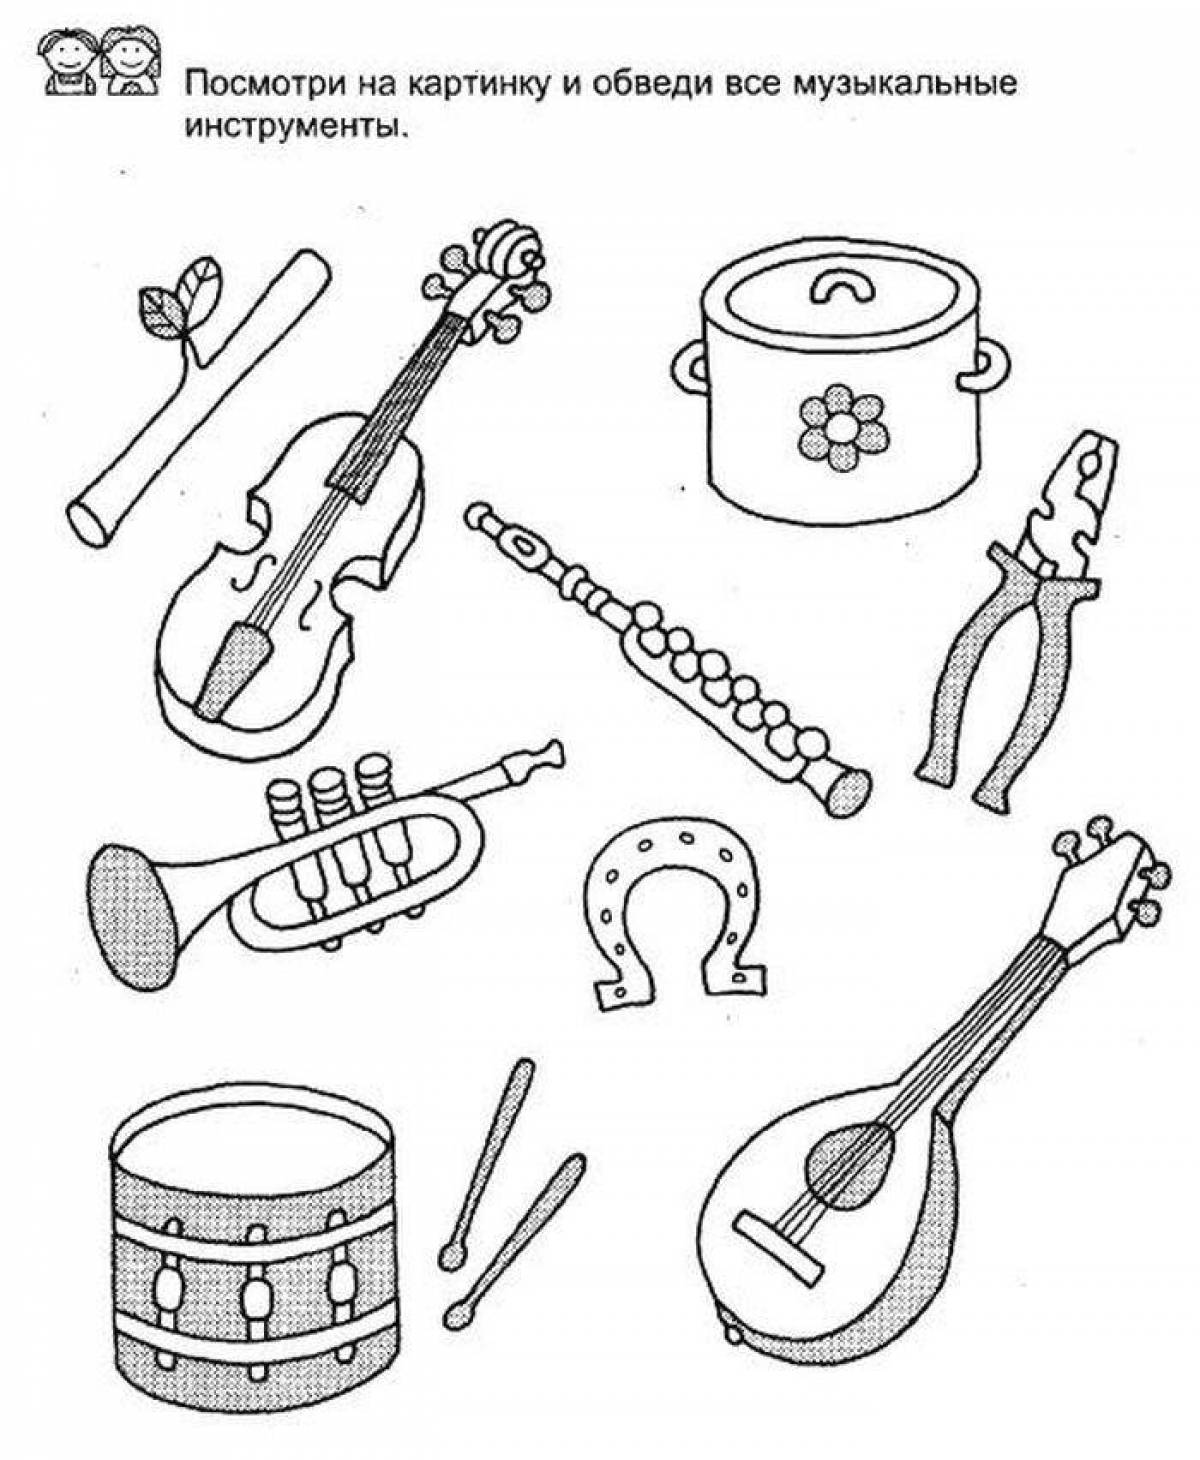 Учить музыкальные инструменты. Музыкальные инструменты задания. Музыкальные инструменты задания для детей. Инструменты задания для детей. Муз инструменты задания для дошкольников.